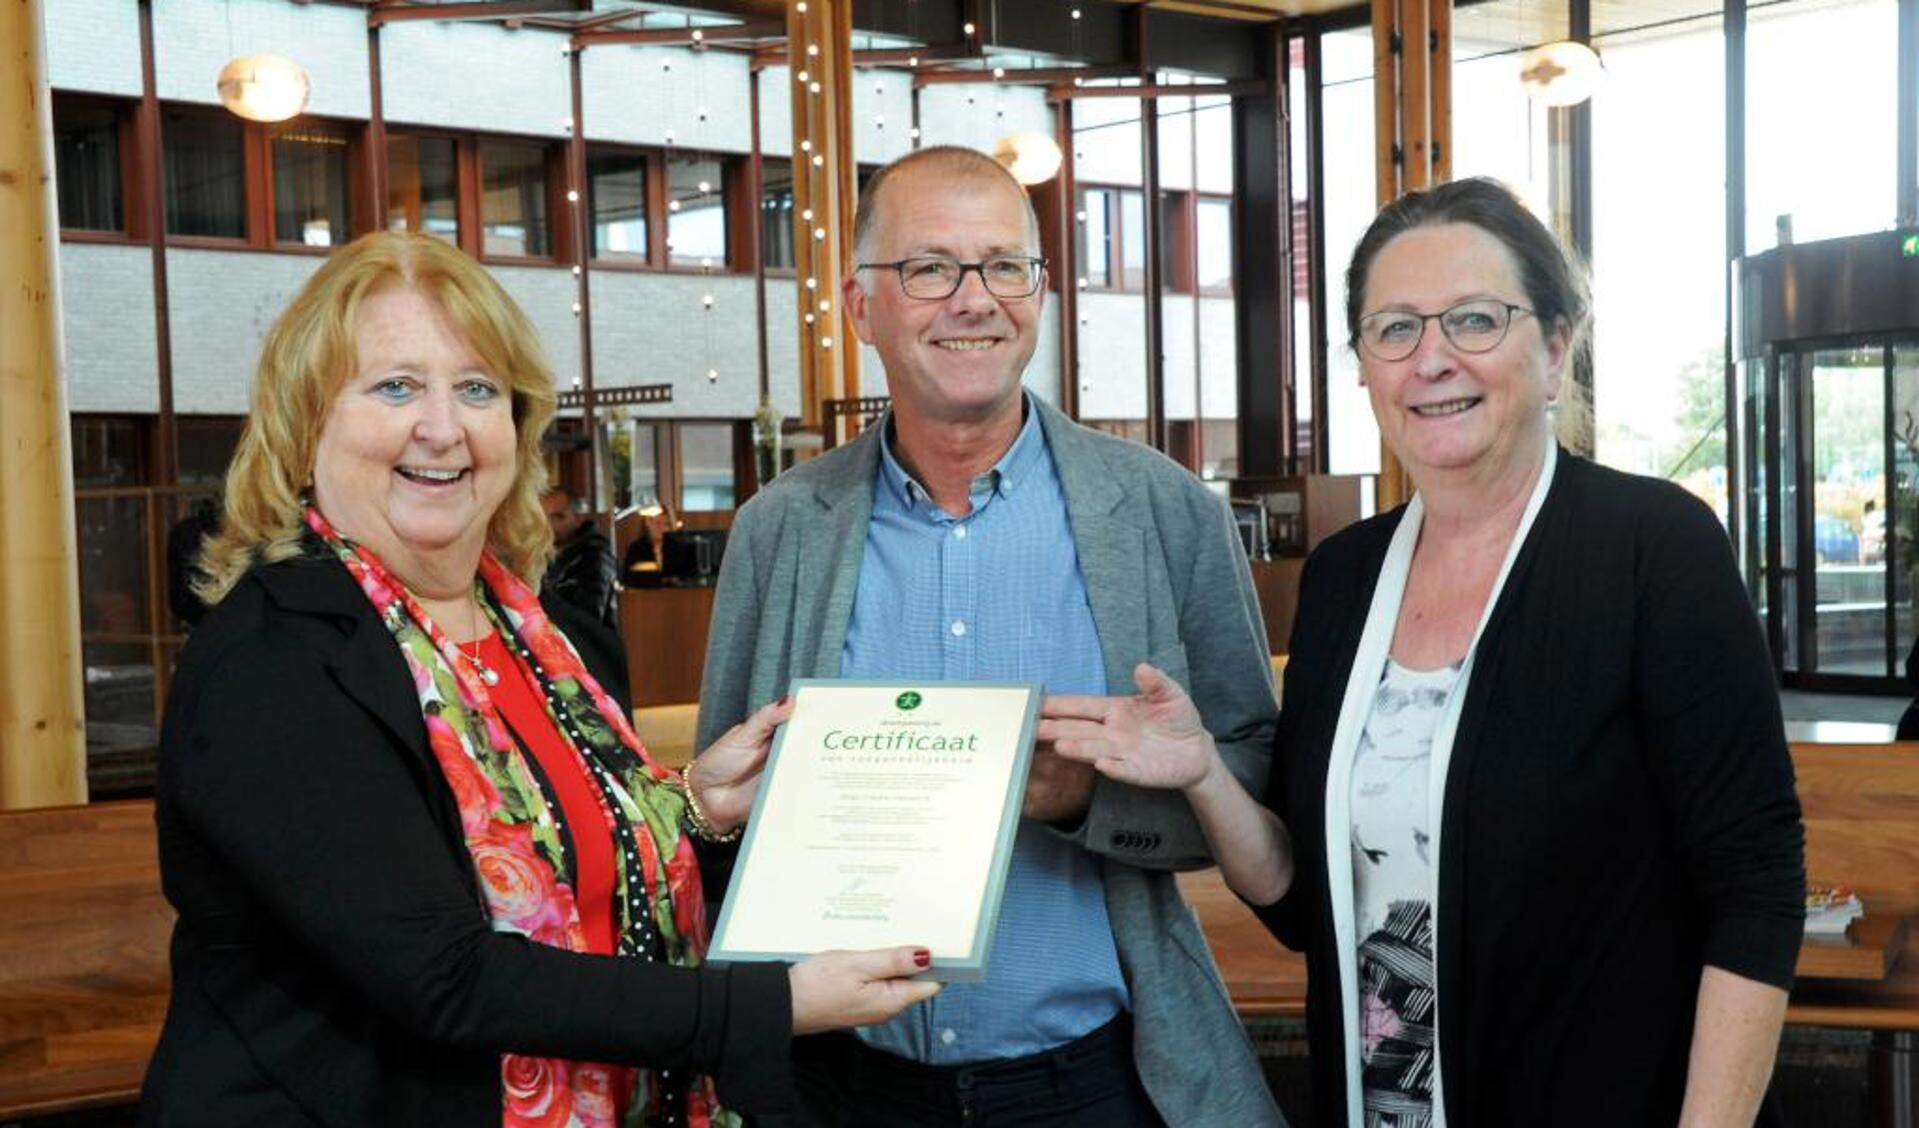 Directeur Stichting Accessibility, Yolande Mansveld, overhandigt het certificaat aan de voorzitter van de Cliëntenraad van VieCuri, Jack Arts, en lid van de Cliëntenraad Marie-Christine Hulsbeck.

